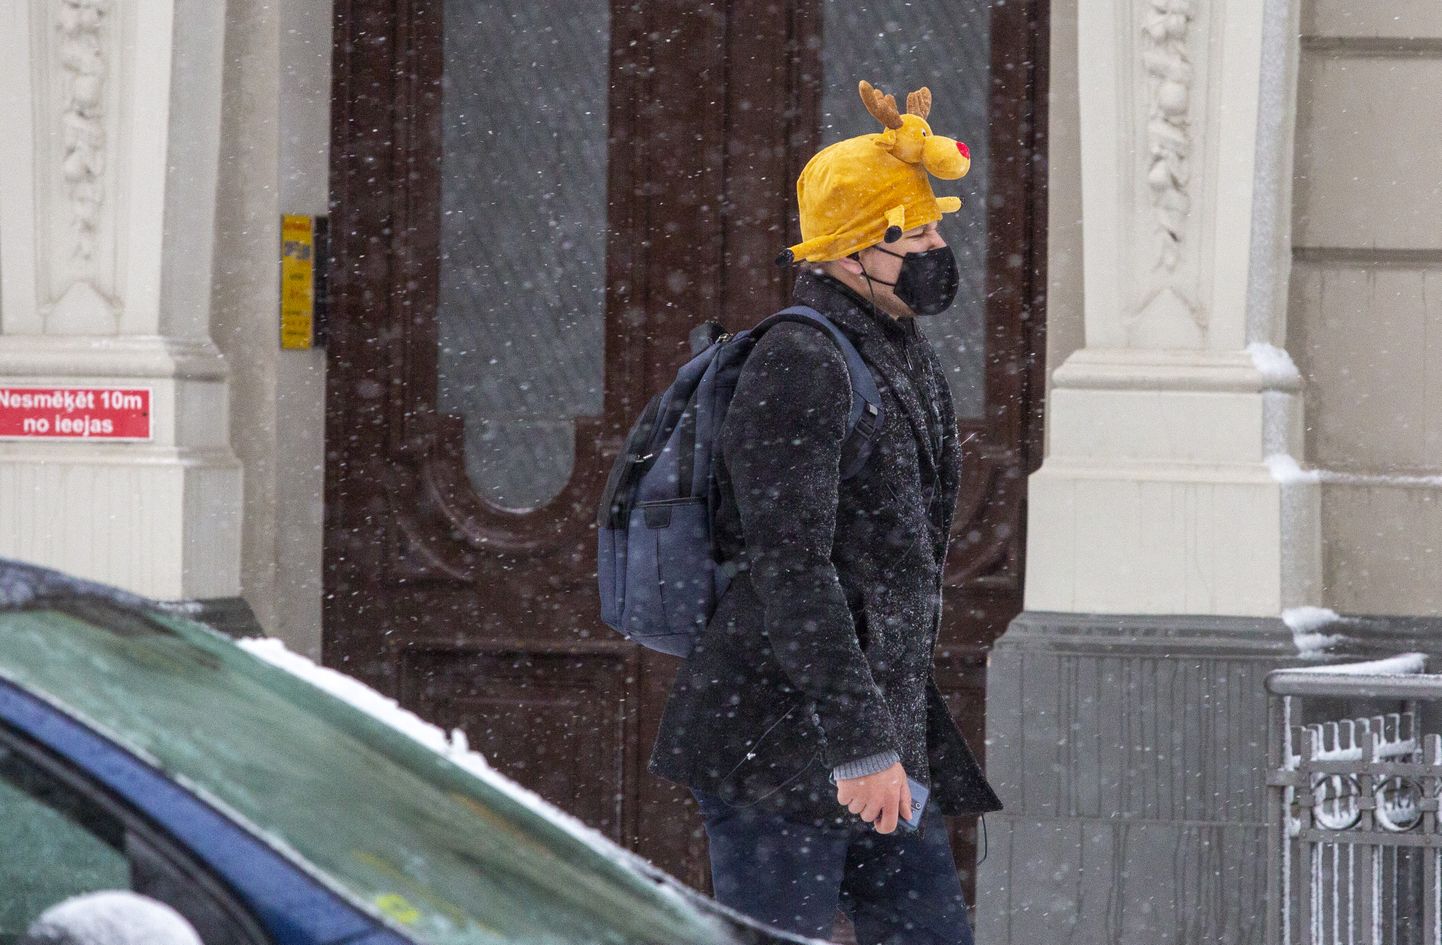 Vīrietis uz ielas sniegputeņa laikā.